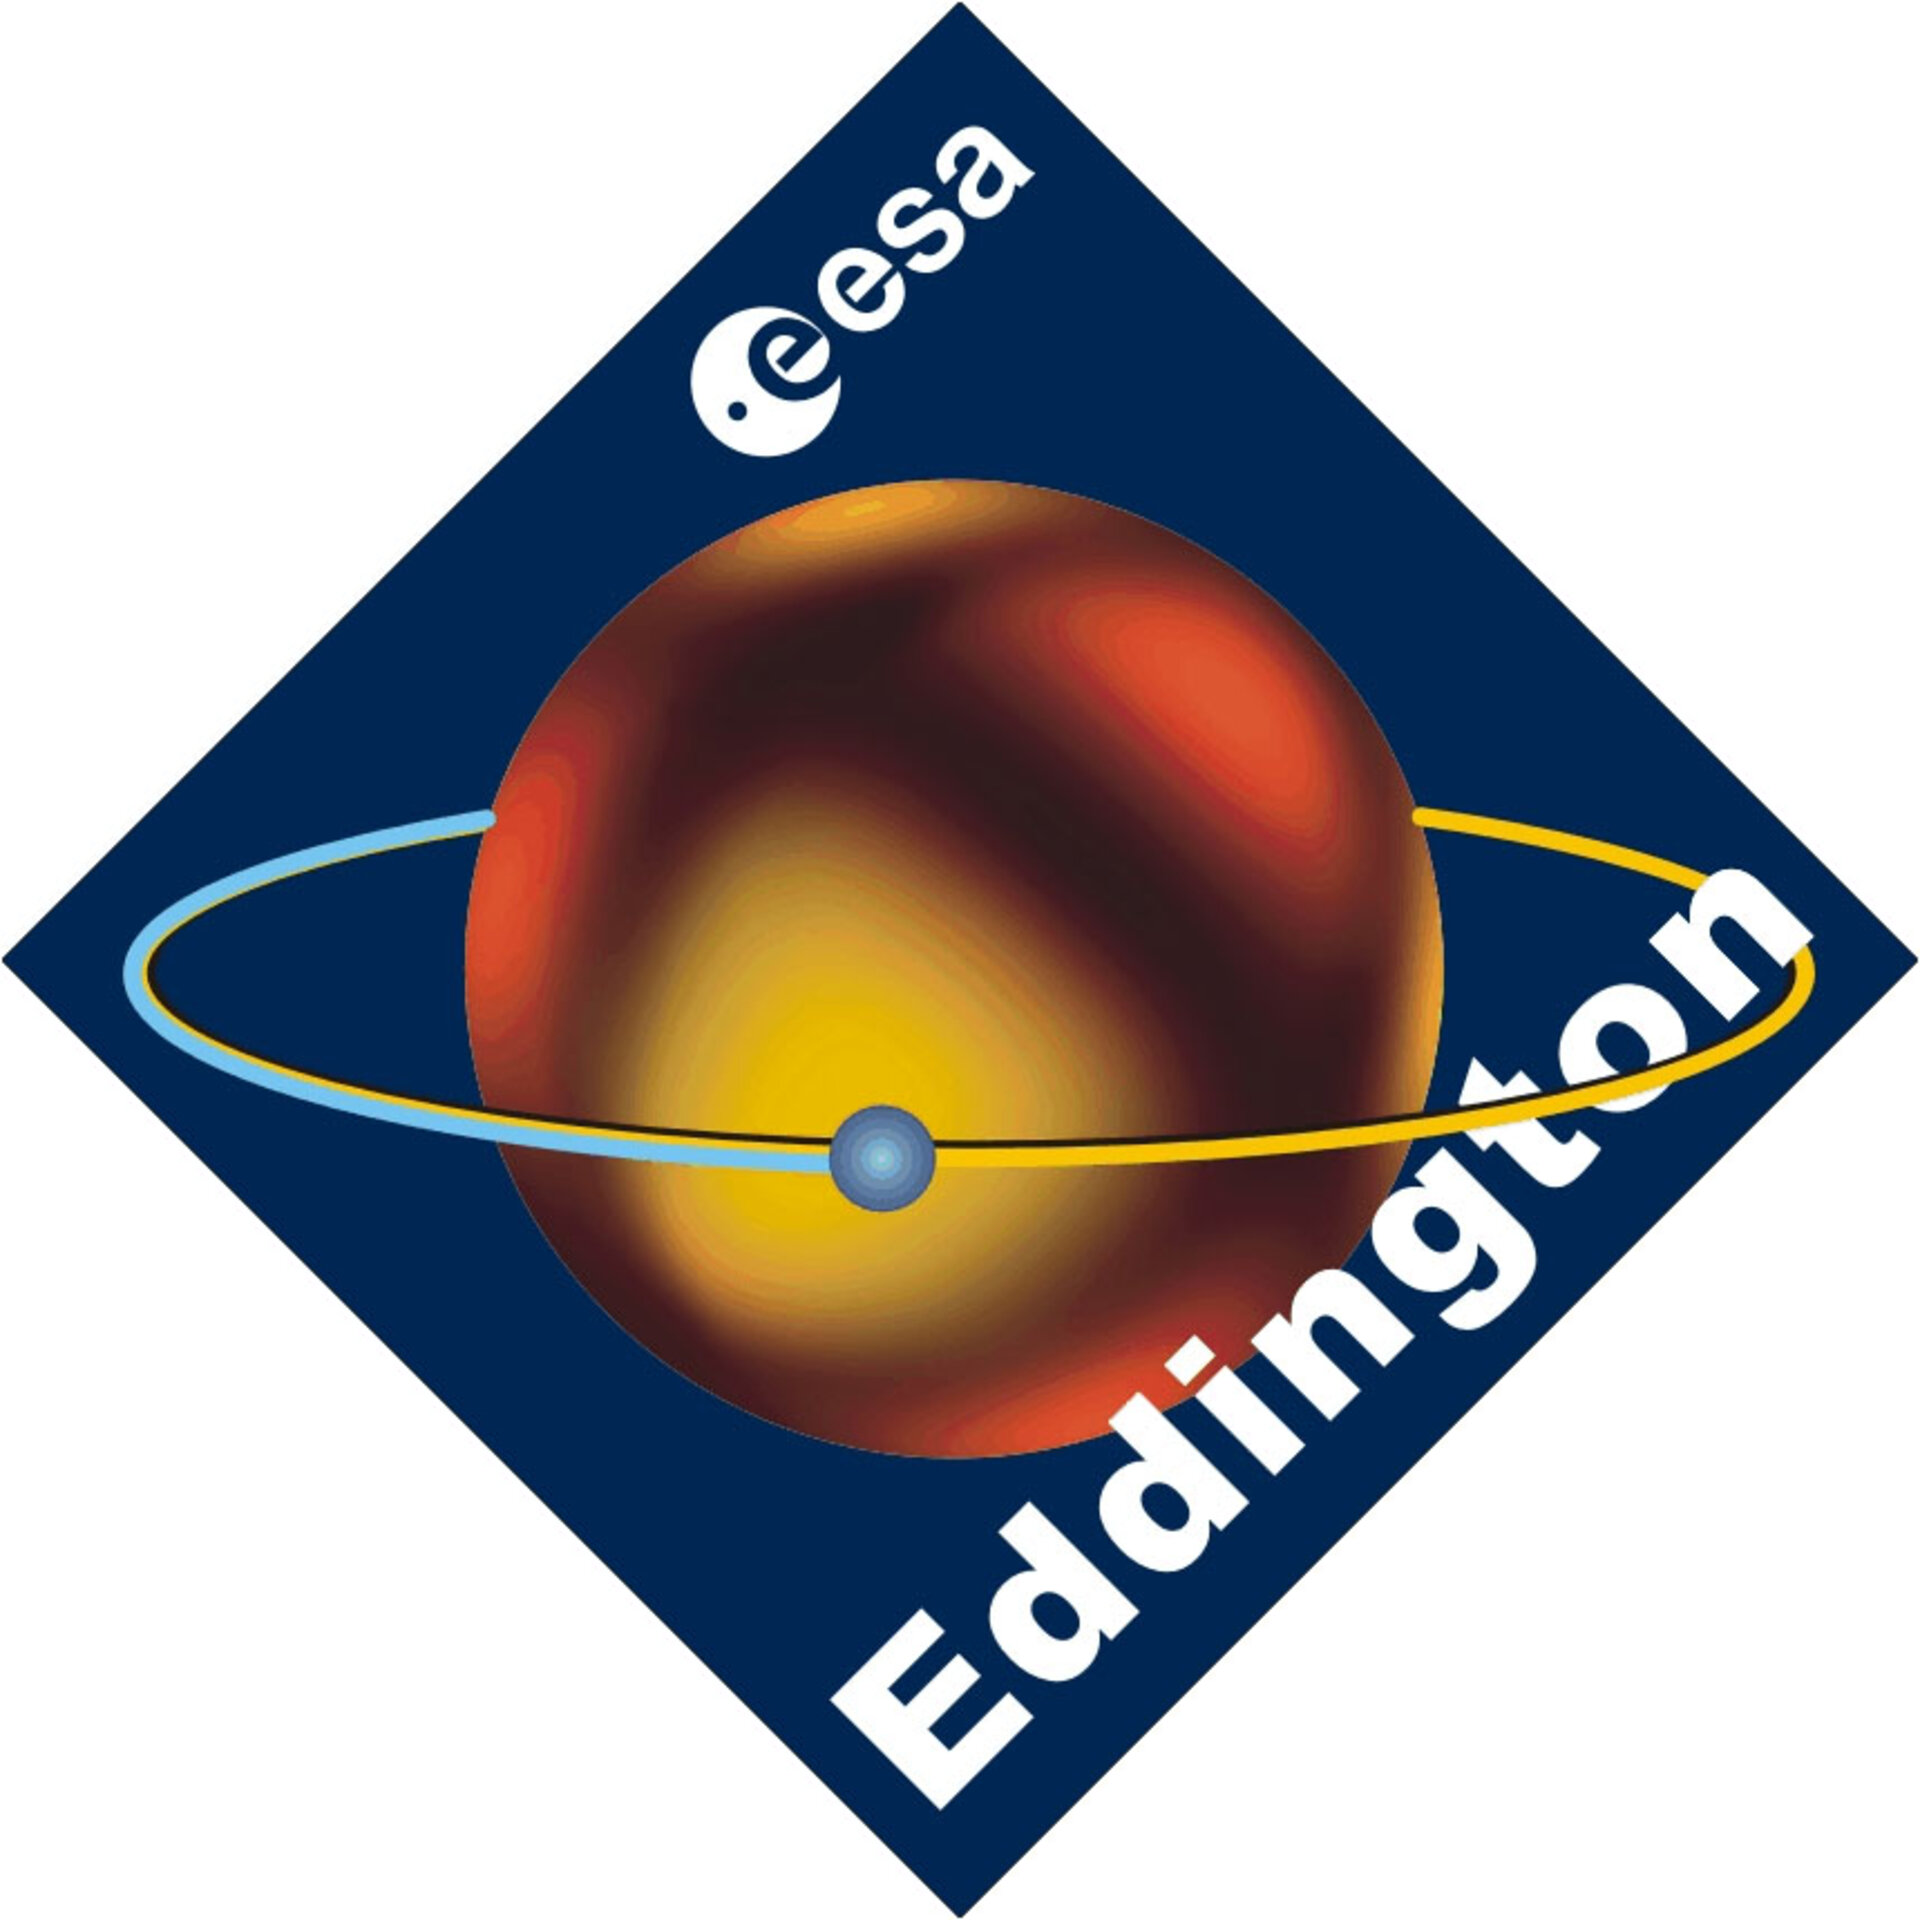 Eddington logo